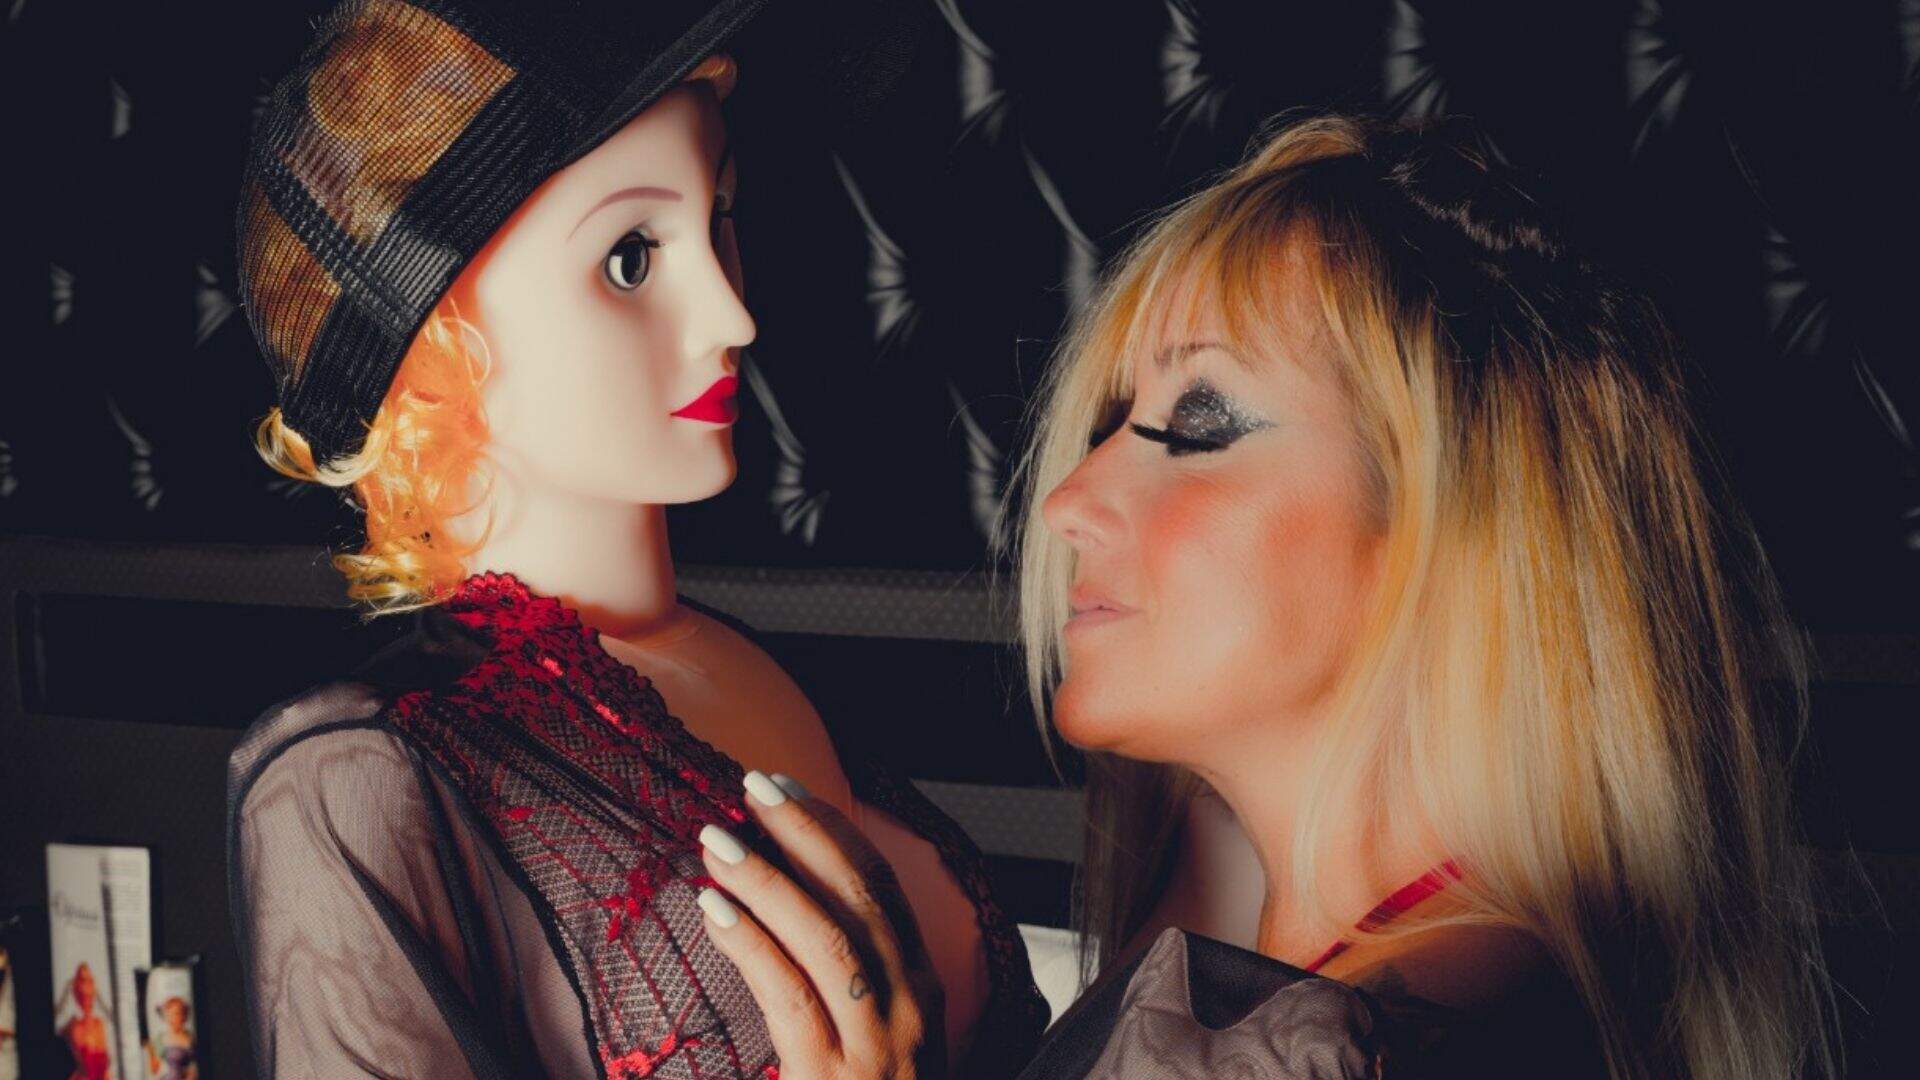 Com roupa transparente, Vivi Fernandez mostra o que faz com sua boneca inflável: “Pego lá mesmo”